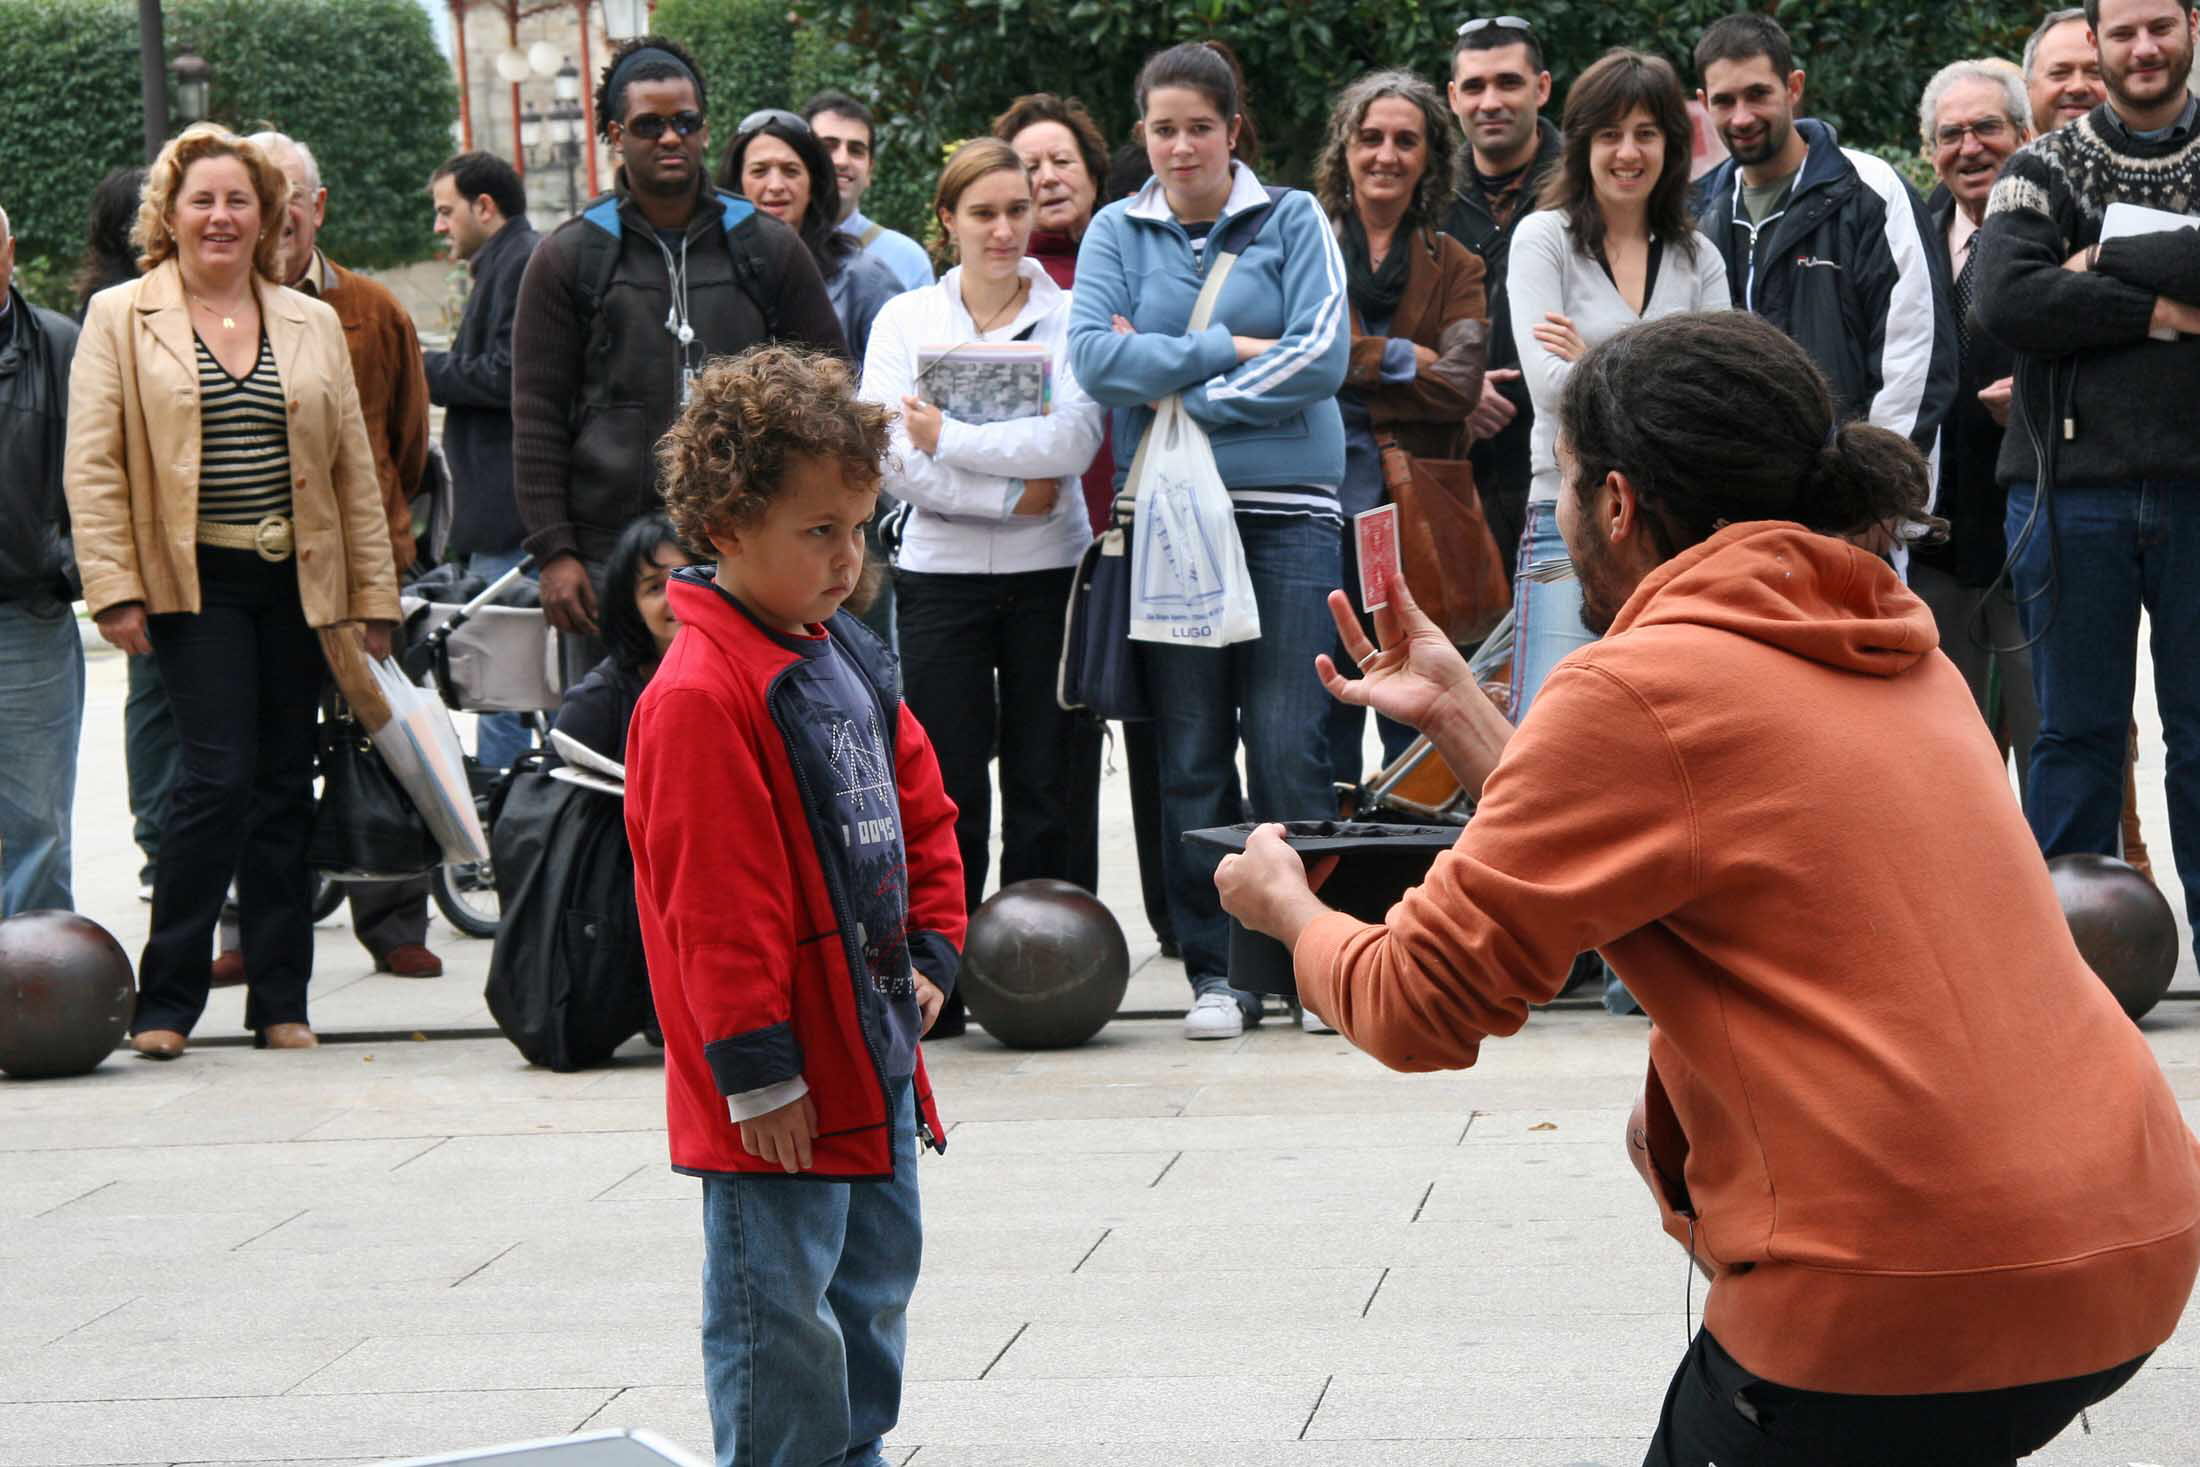 Un mago realiza su espectáculo dentro de la semana "Lugo mágico". Foto: EFE/J.M.CASTRO